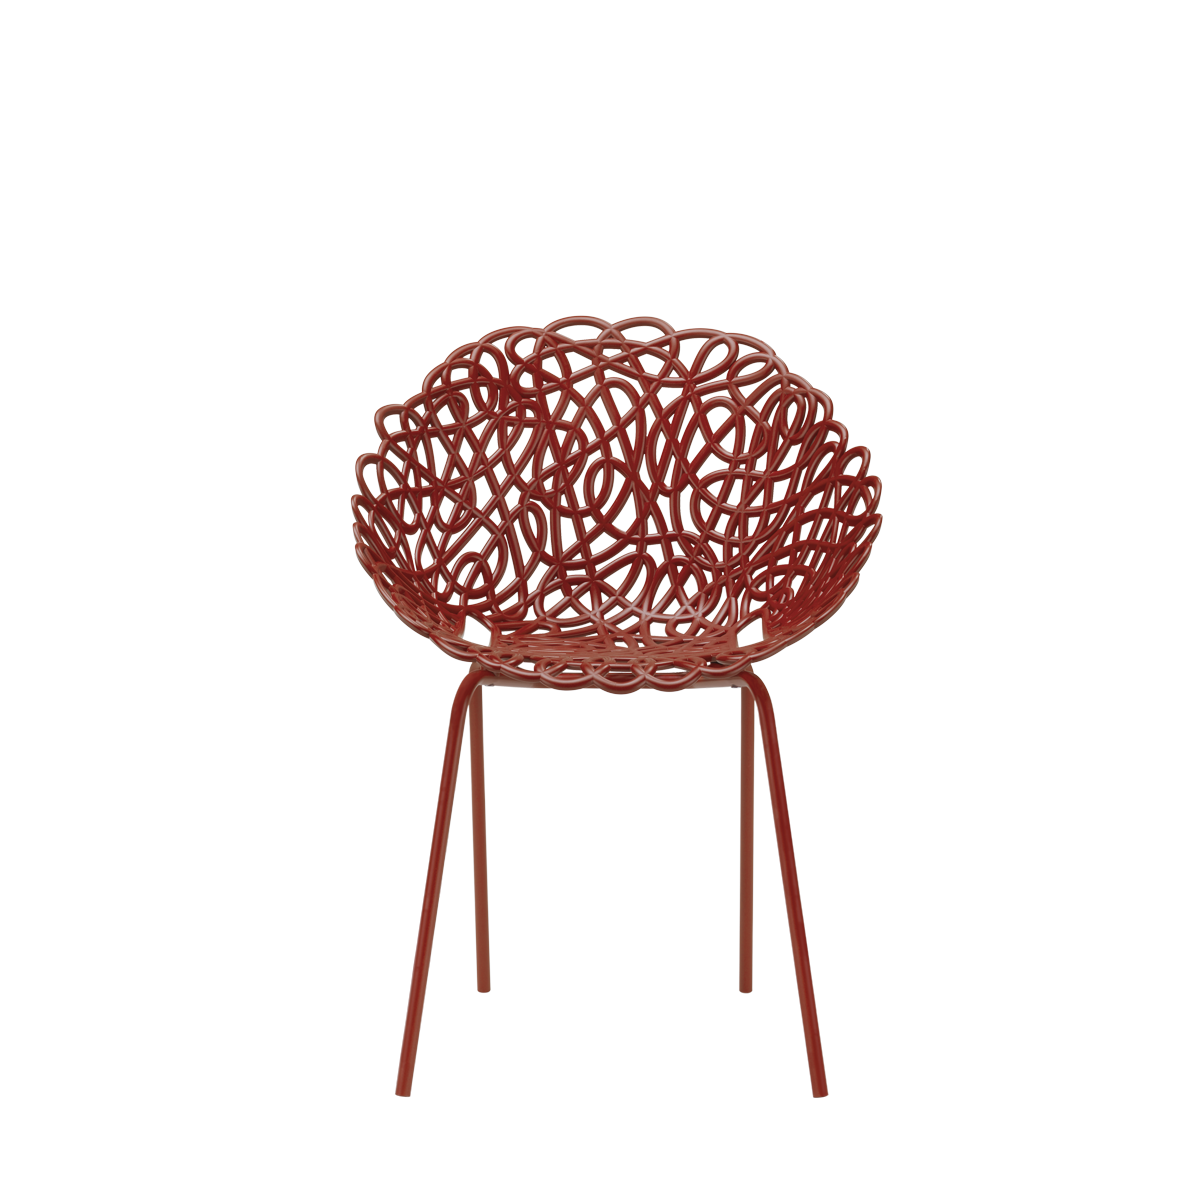 Qeeboo Bacana Chair Outdoor-Set Of 2 Pieces, Versch. Farben